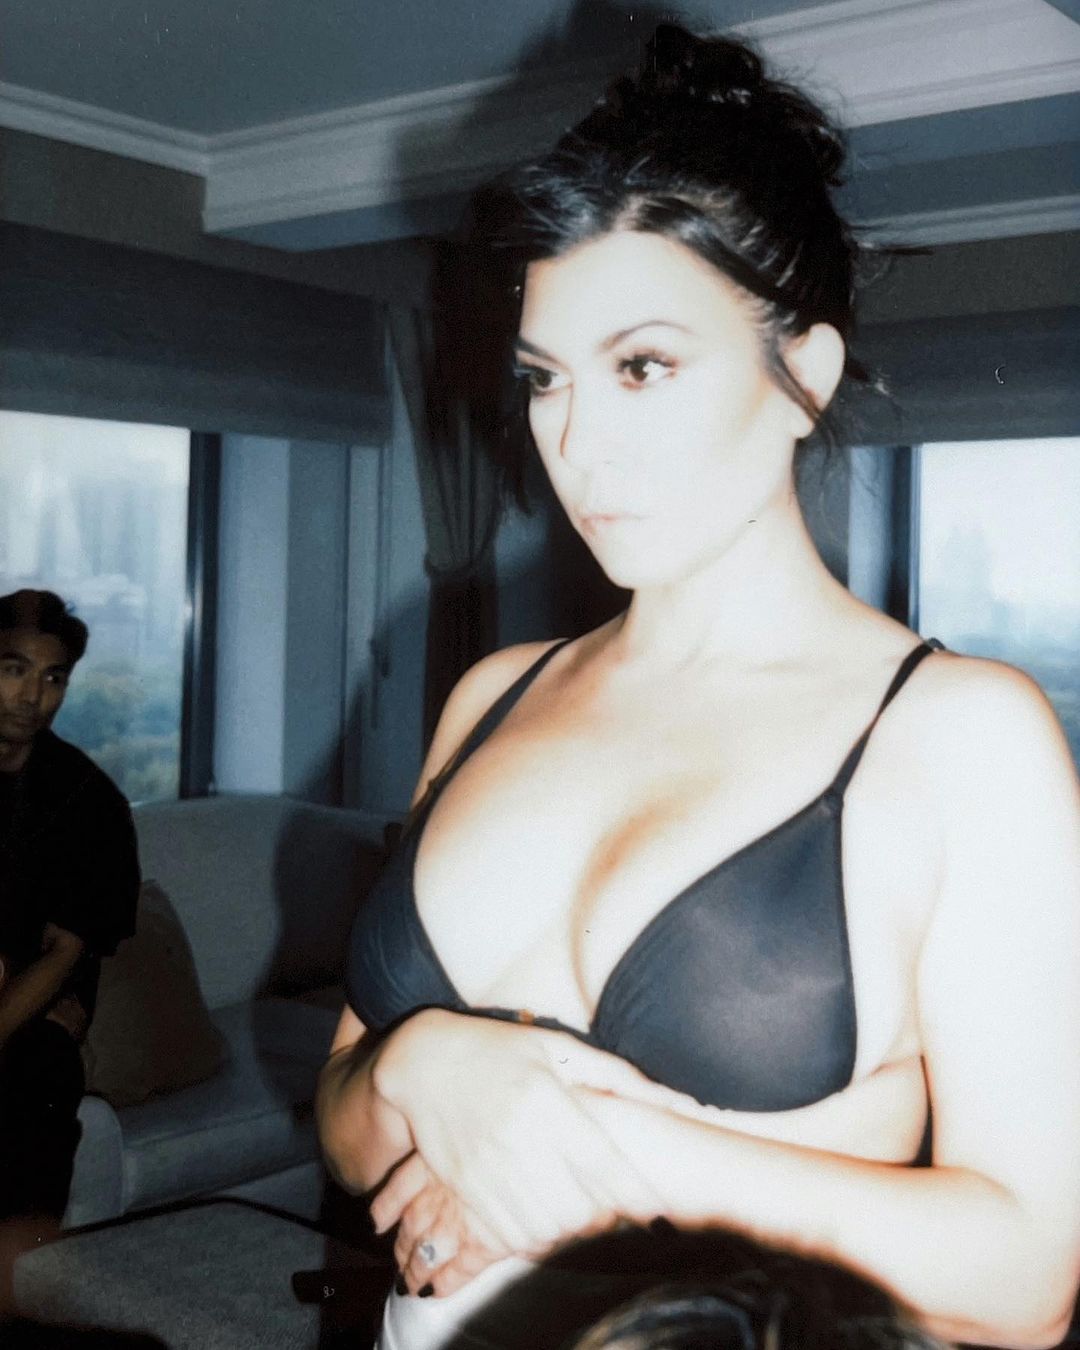 Kourtney Kardashian’s Pool Day! - Photo 33